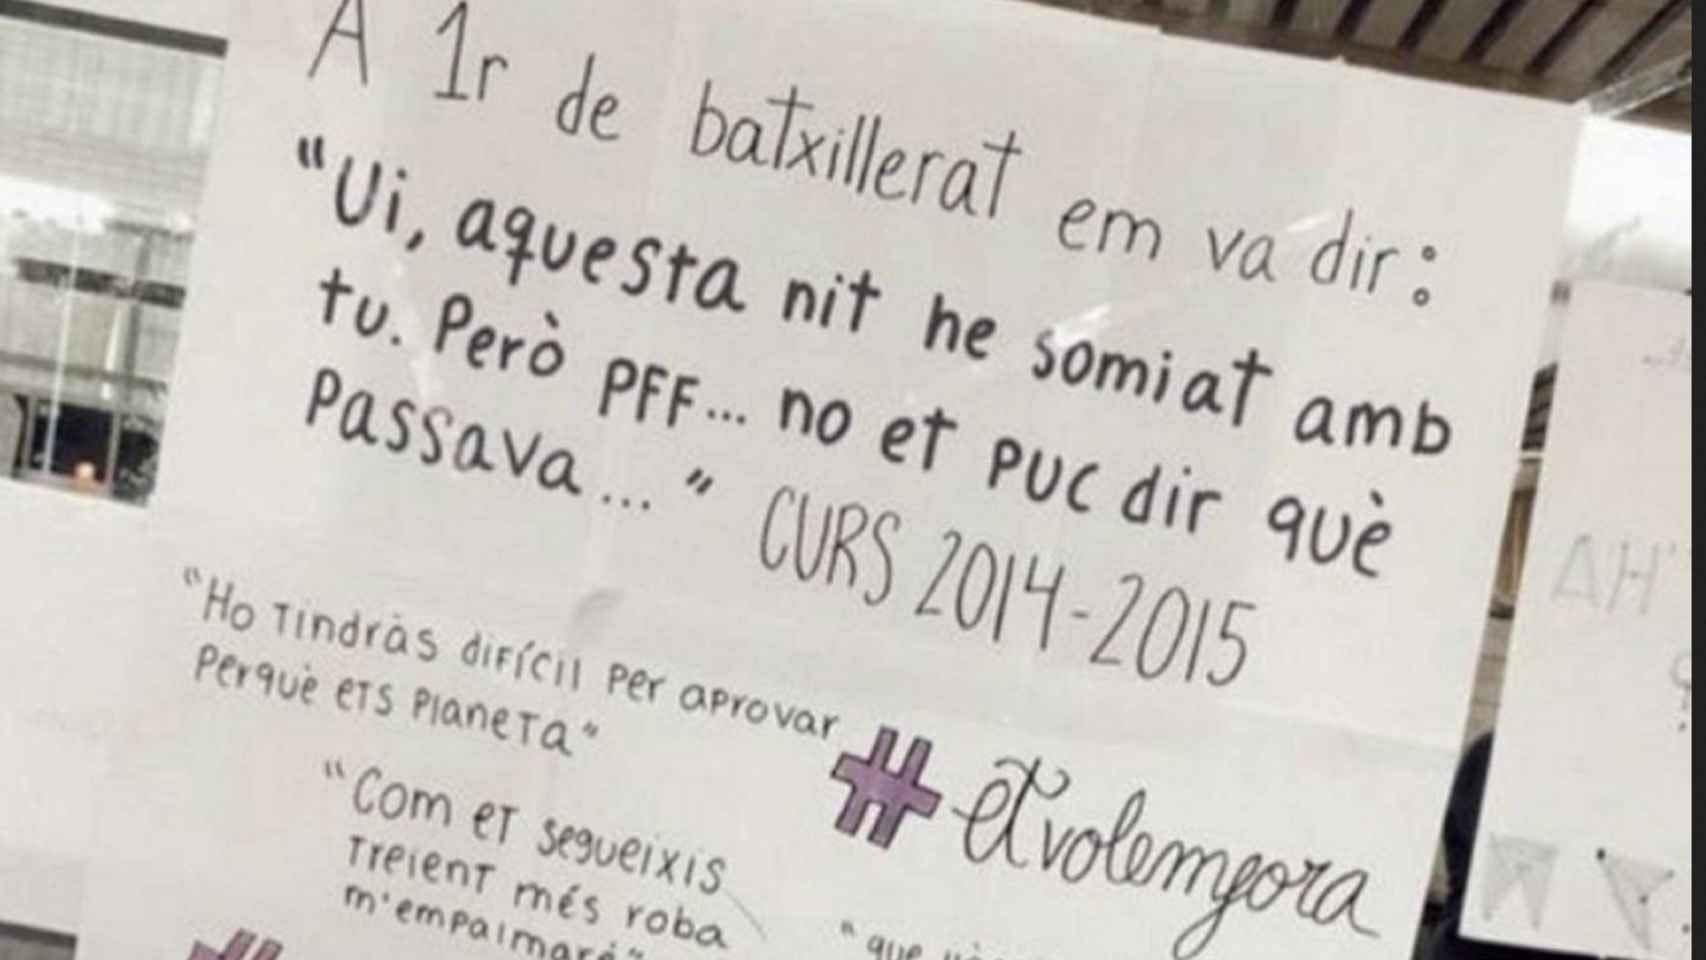 Cartel que denuncia acoso sexual en el instituto de Castellar del Vallès / INSTAGRAM